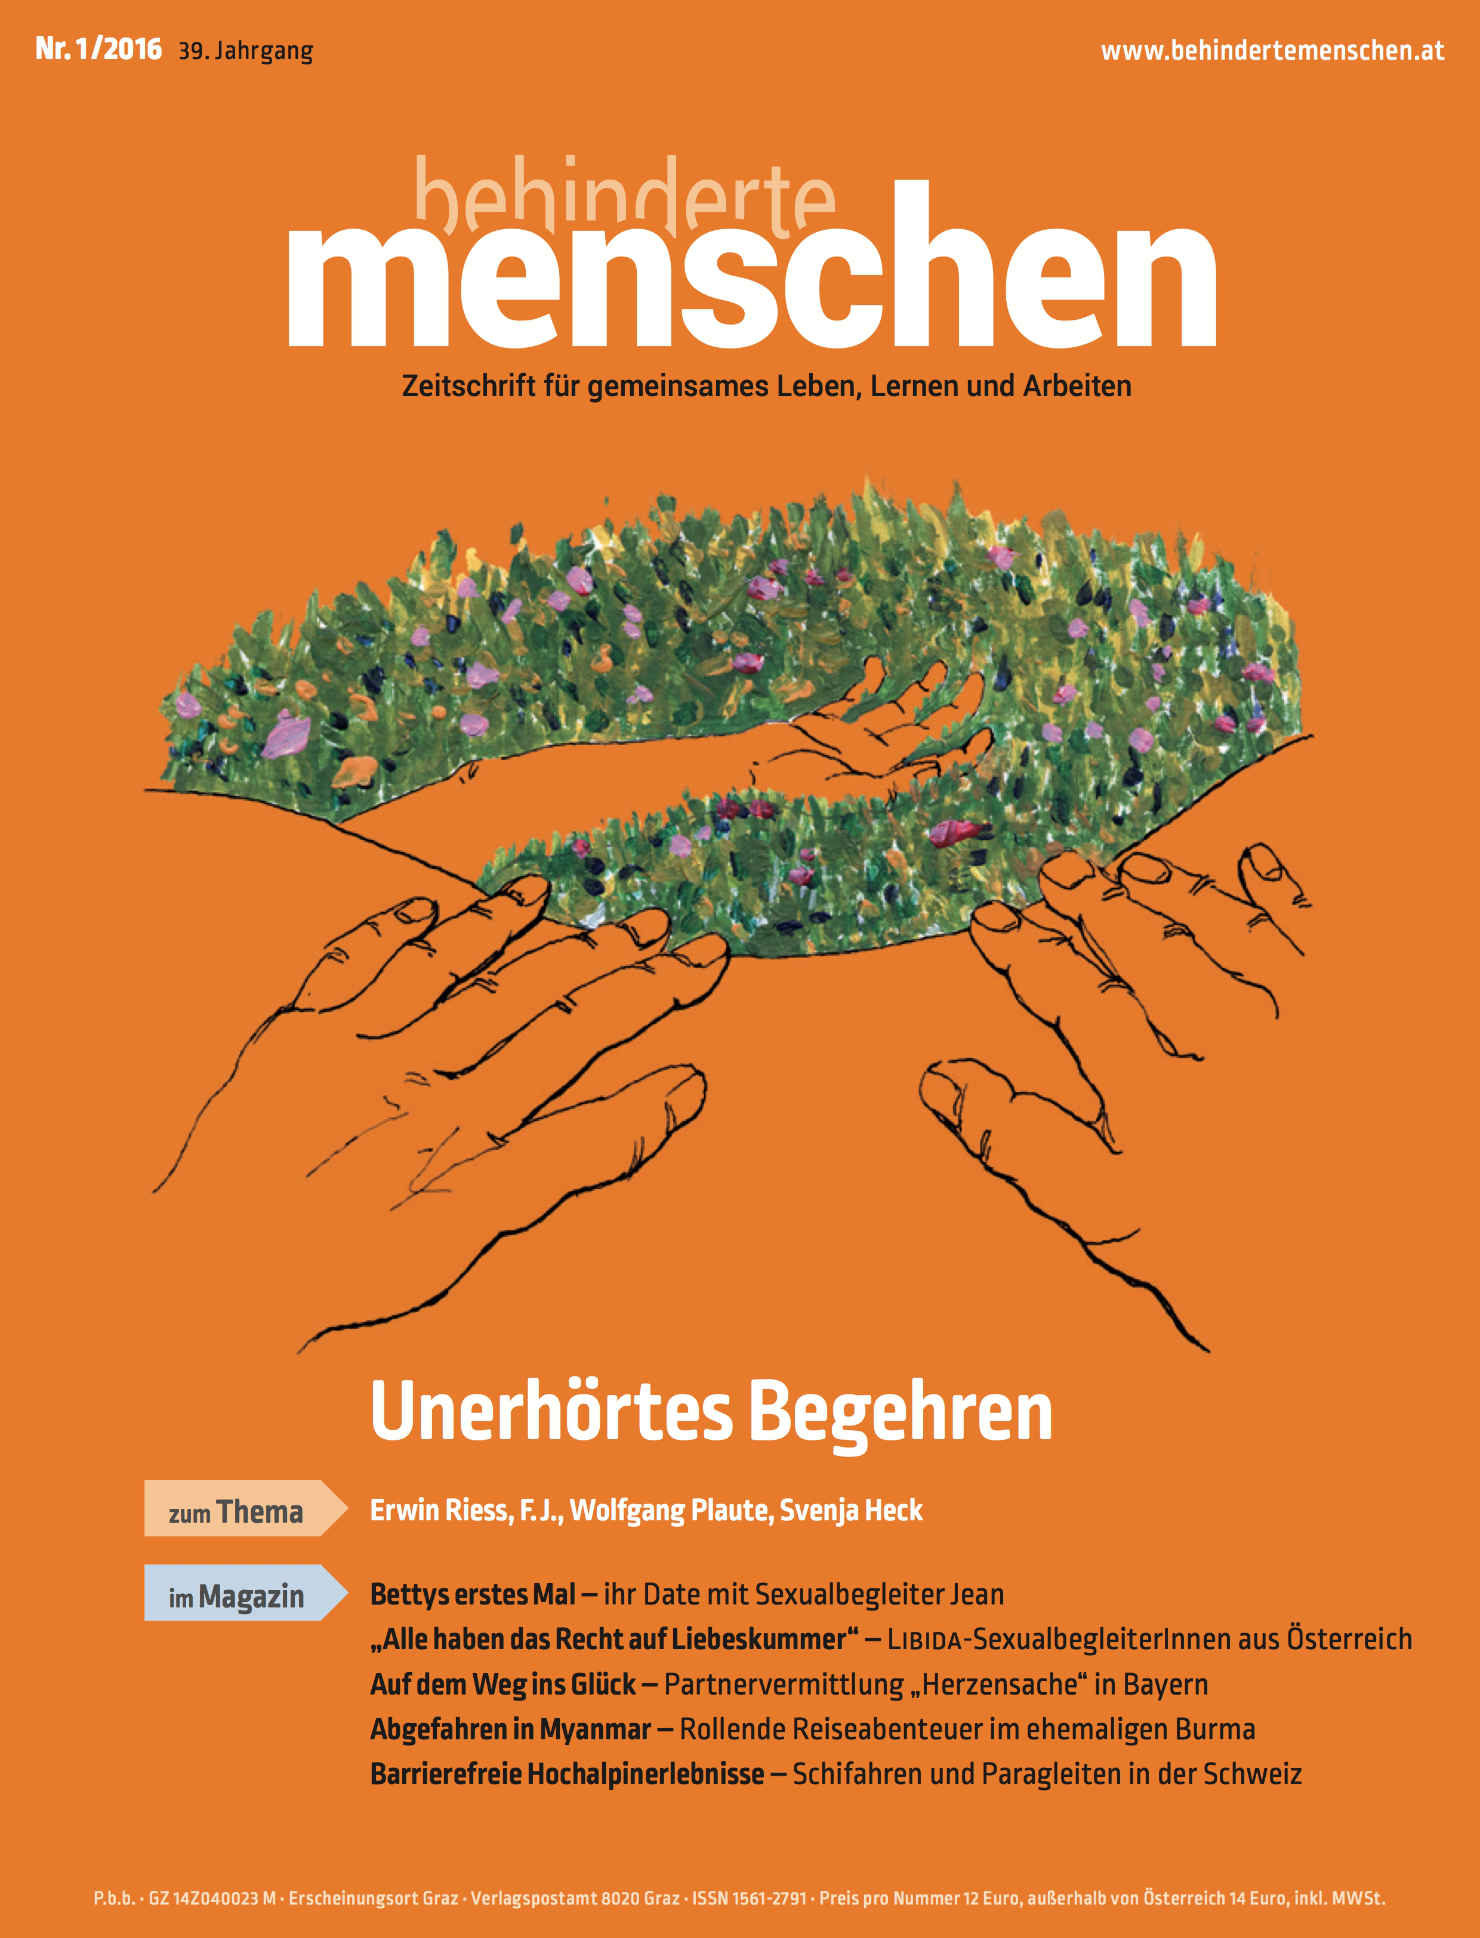 Titelbild der Zeitschrift BEHINDERTE MENSCHEN, Ausgabe 1/2016 "Unerhörtes Begehren"